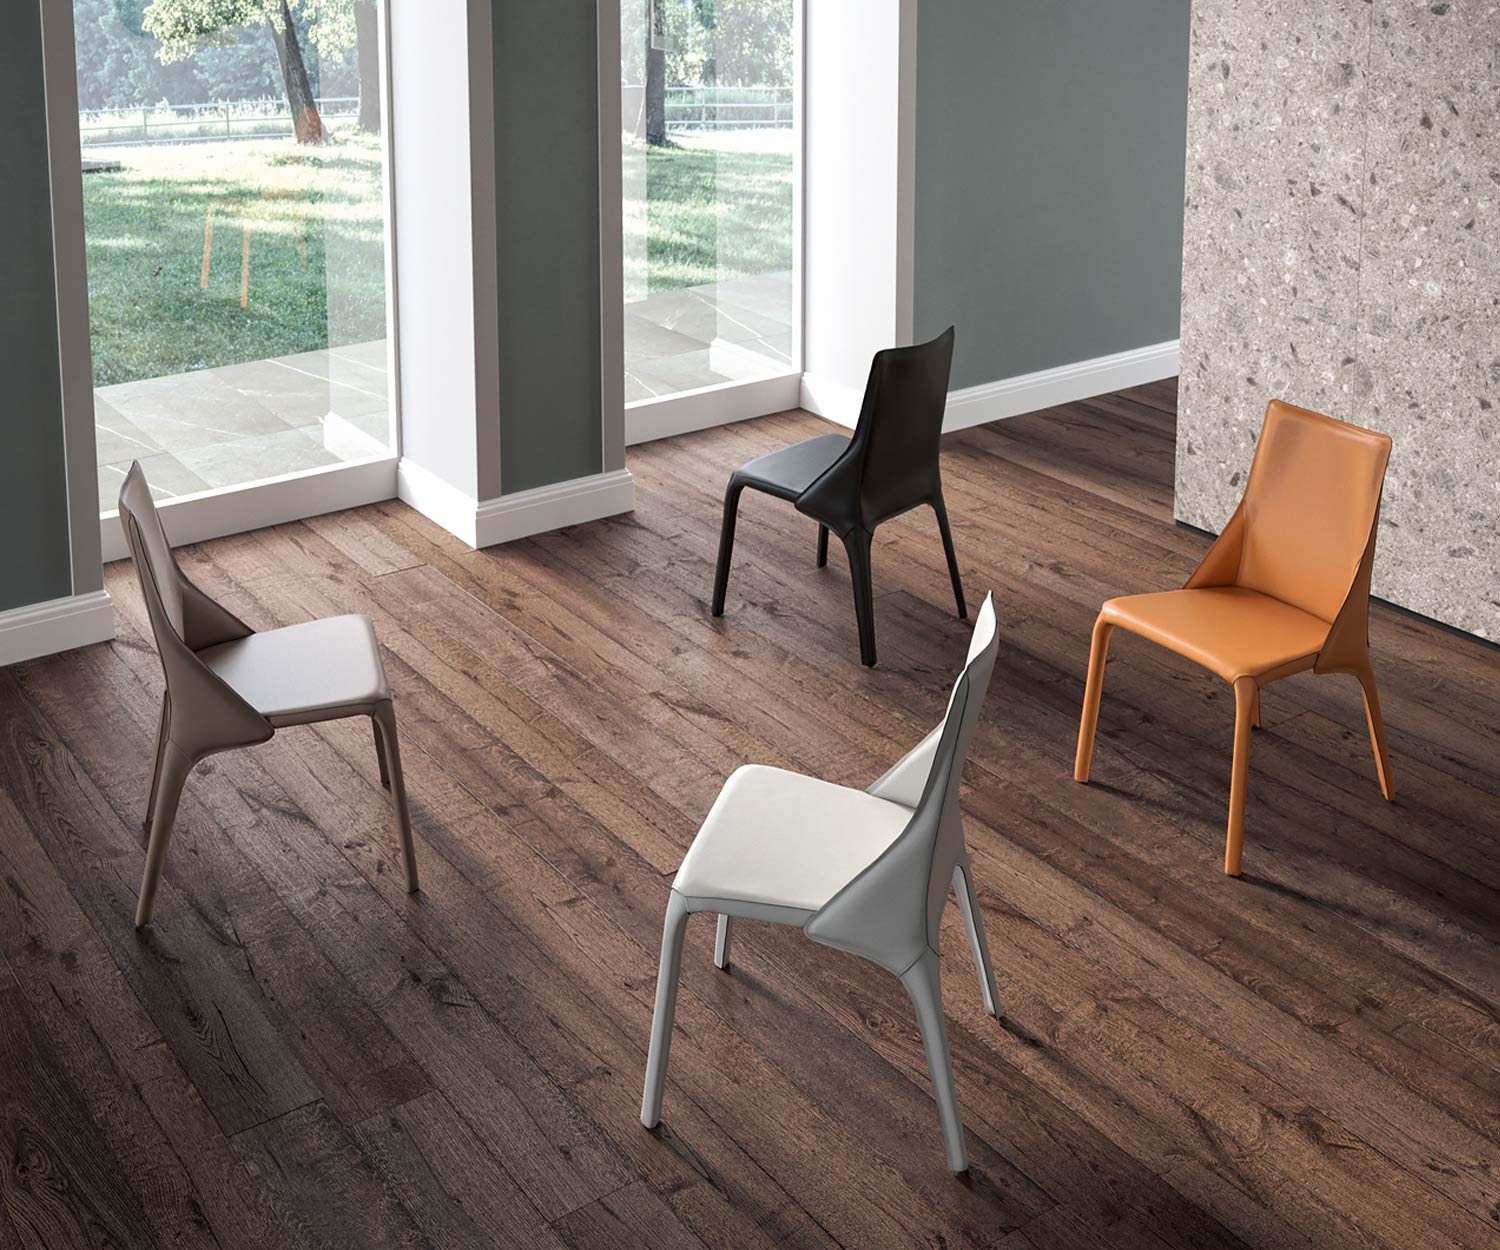 Chaise en cuir design moderne quatre chaises en cuir installées dans une pièce sur un plancher en bois